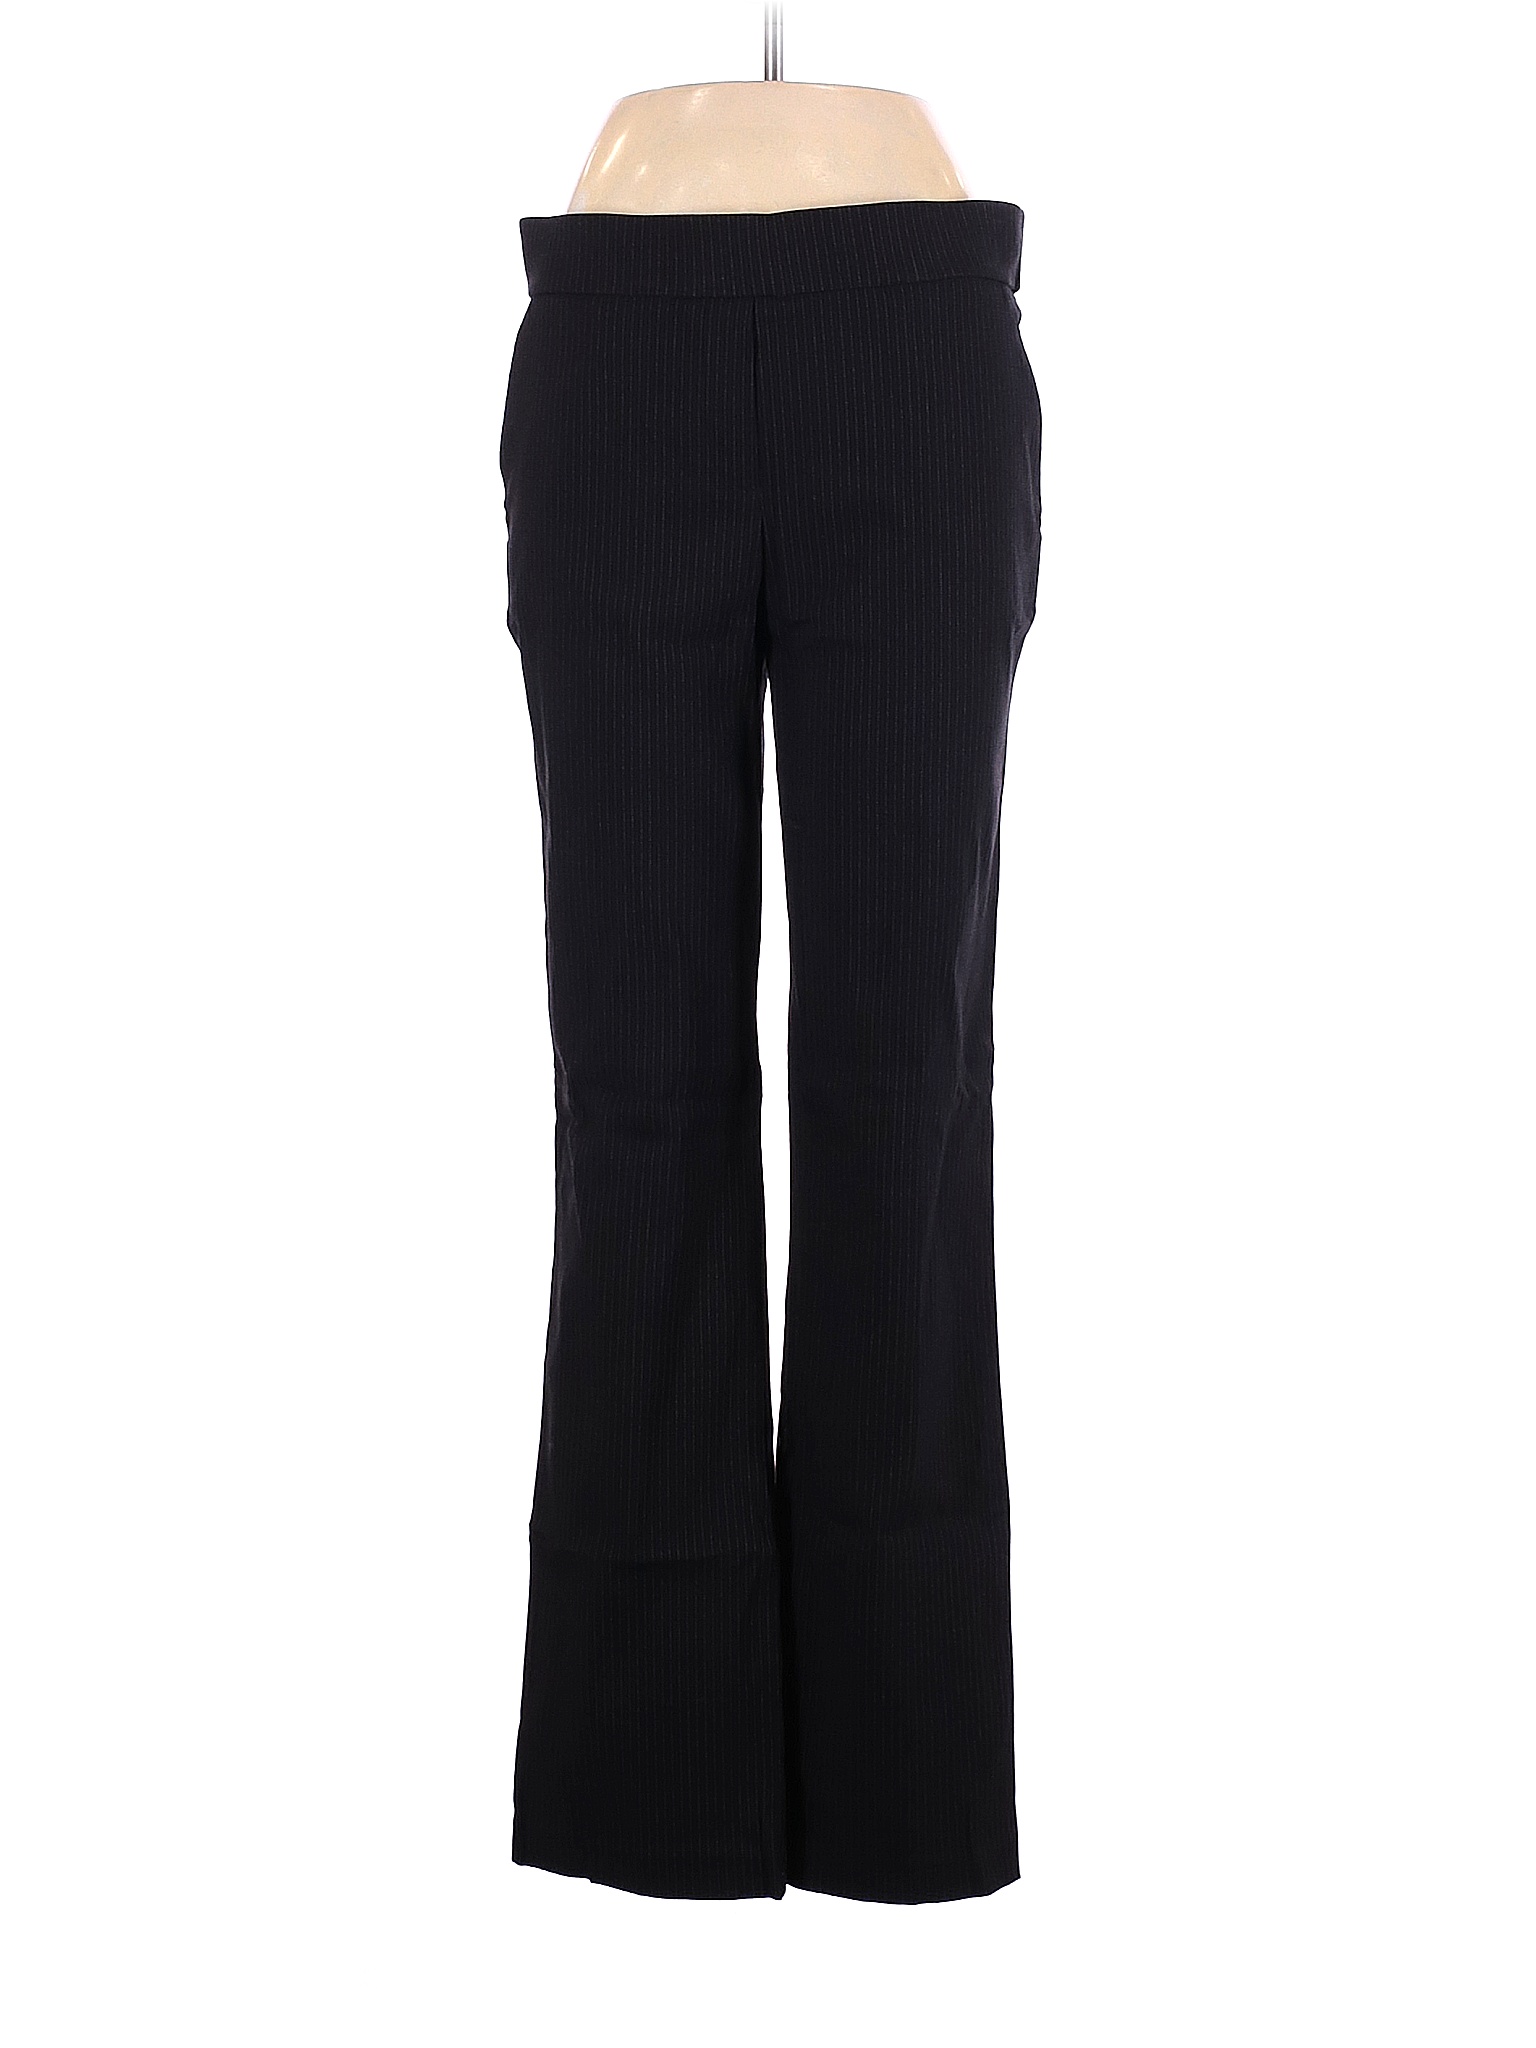 Jules & Leopold Solid Black Dress Pants Size M - 73% off | thredUP